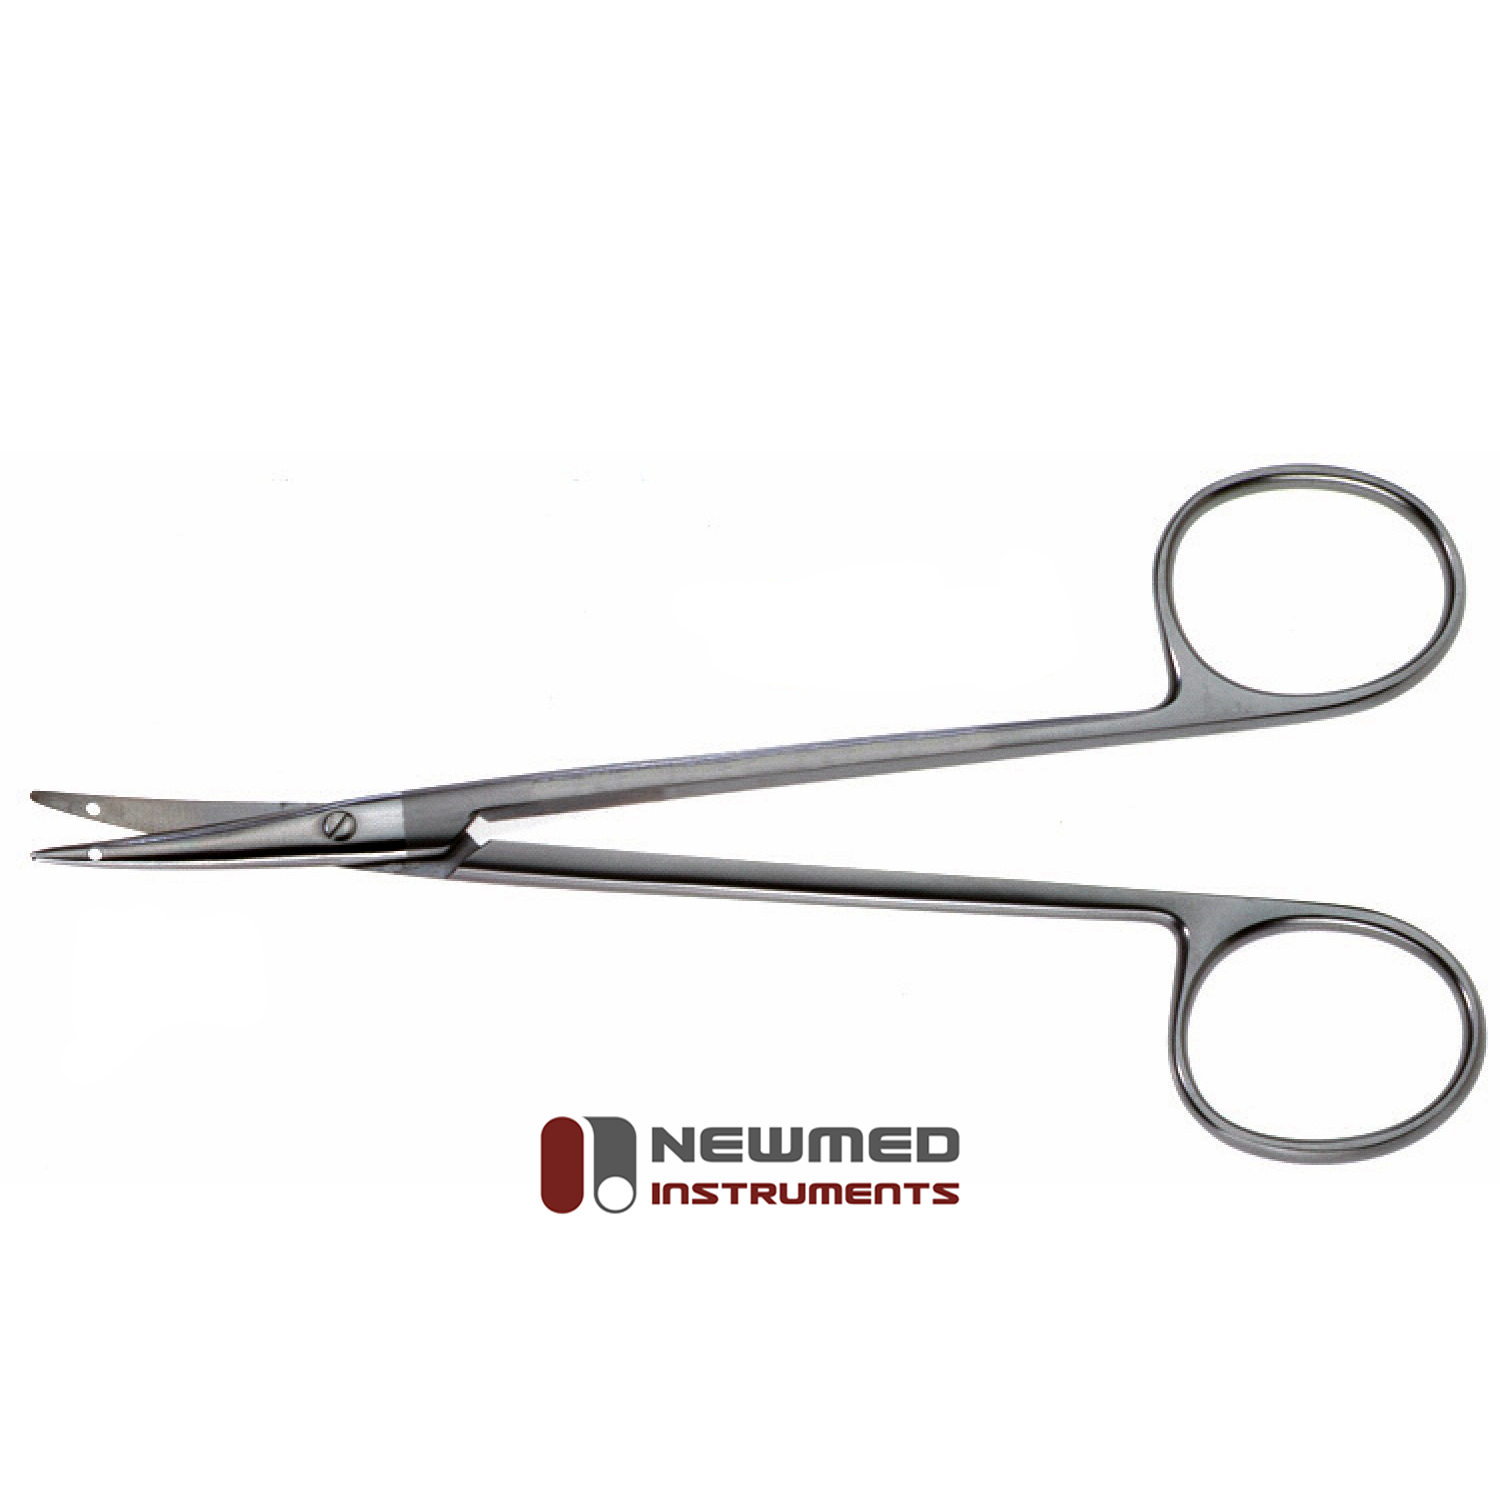 Littler Suture Scissors - Plastic Surgery Scissors